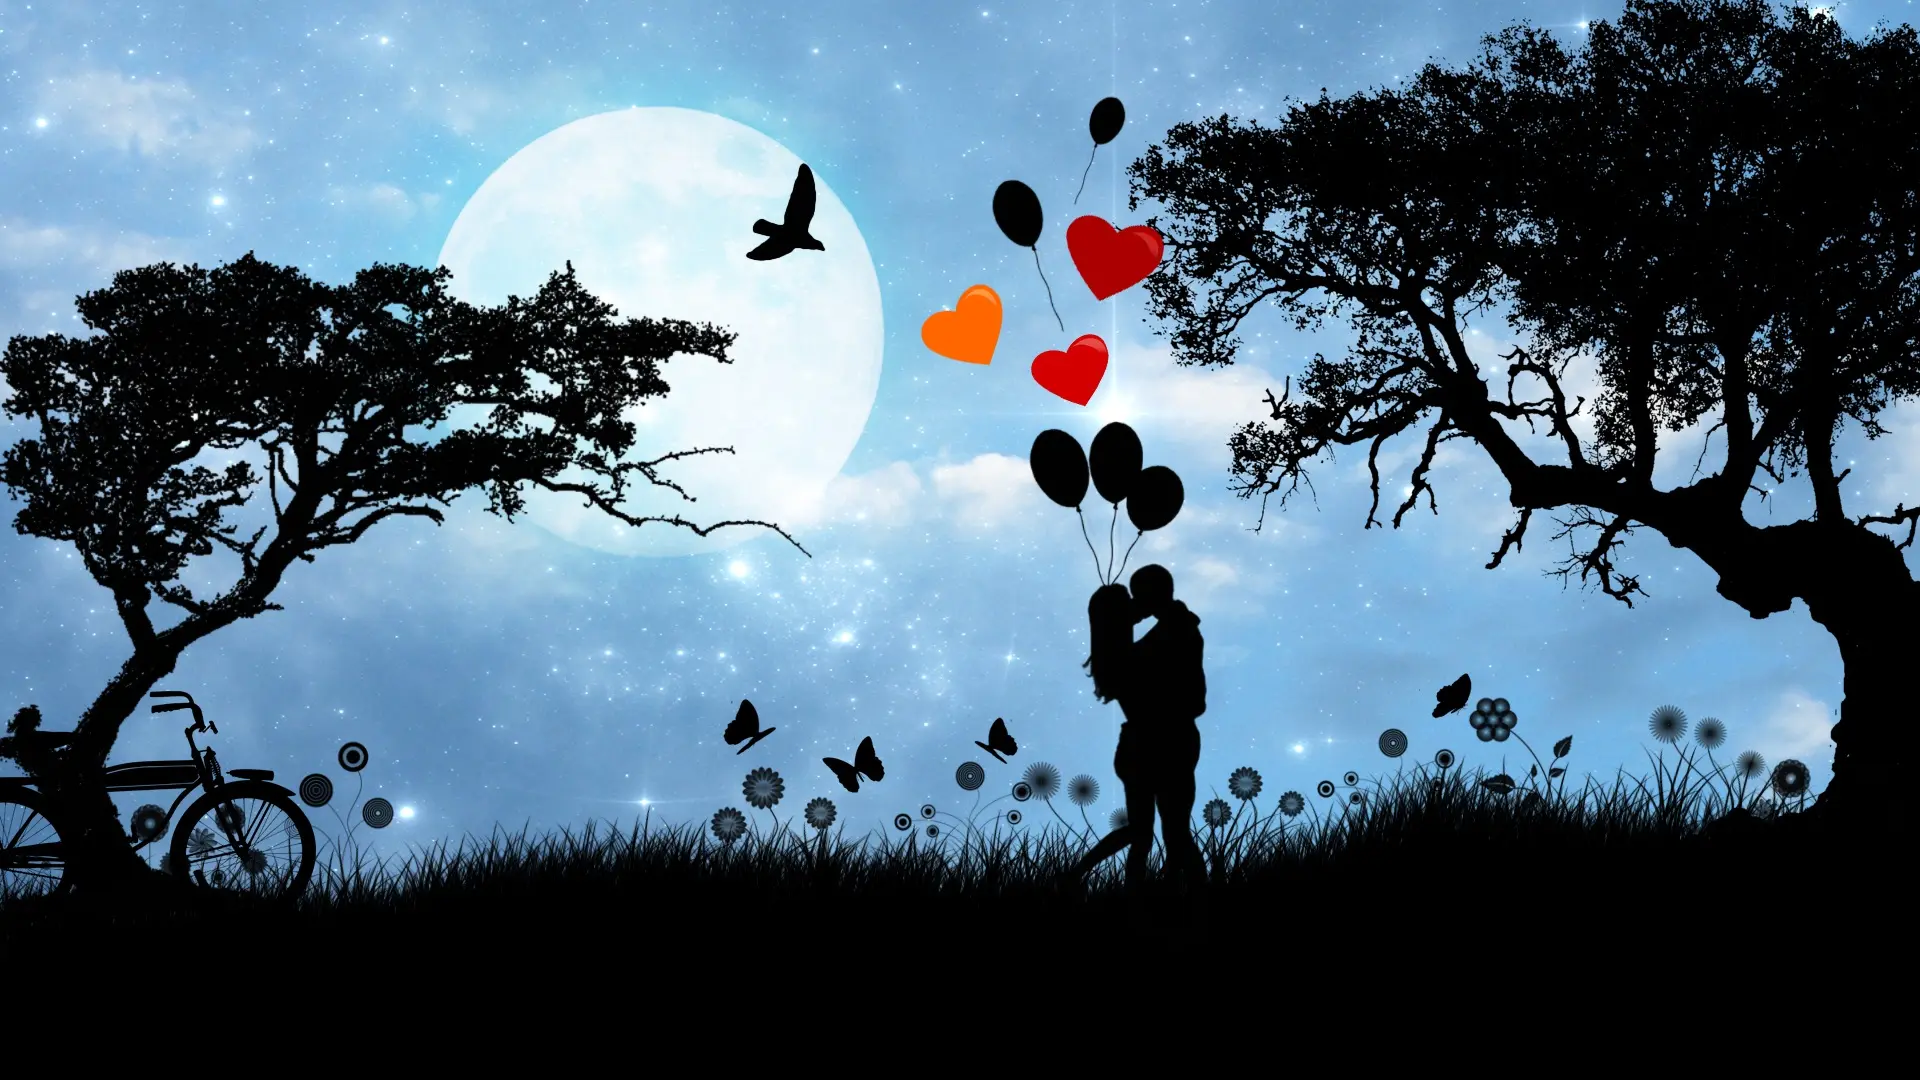 ljubav, ljubavni par, zaljubljenost Pixabay-645a2da4bc4c2.webp